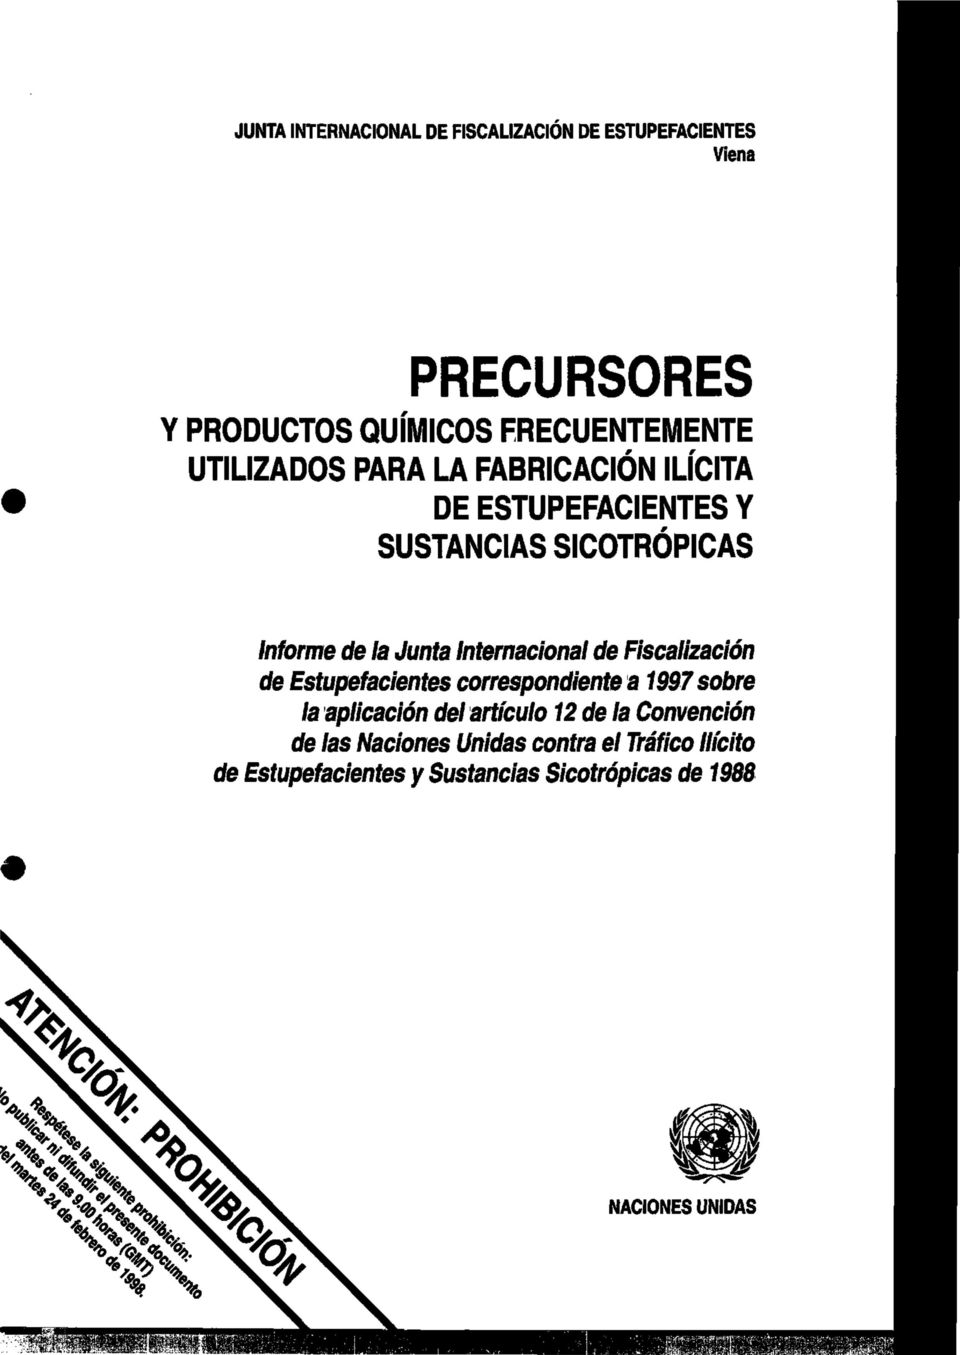 Internacional de Fiscalización de Estupefacientes correspondiente a 1997 sobre la aplicación del artículo 12